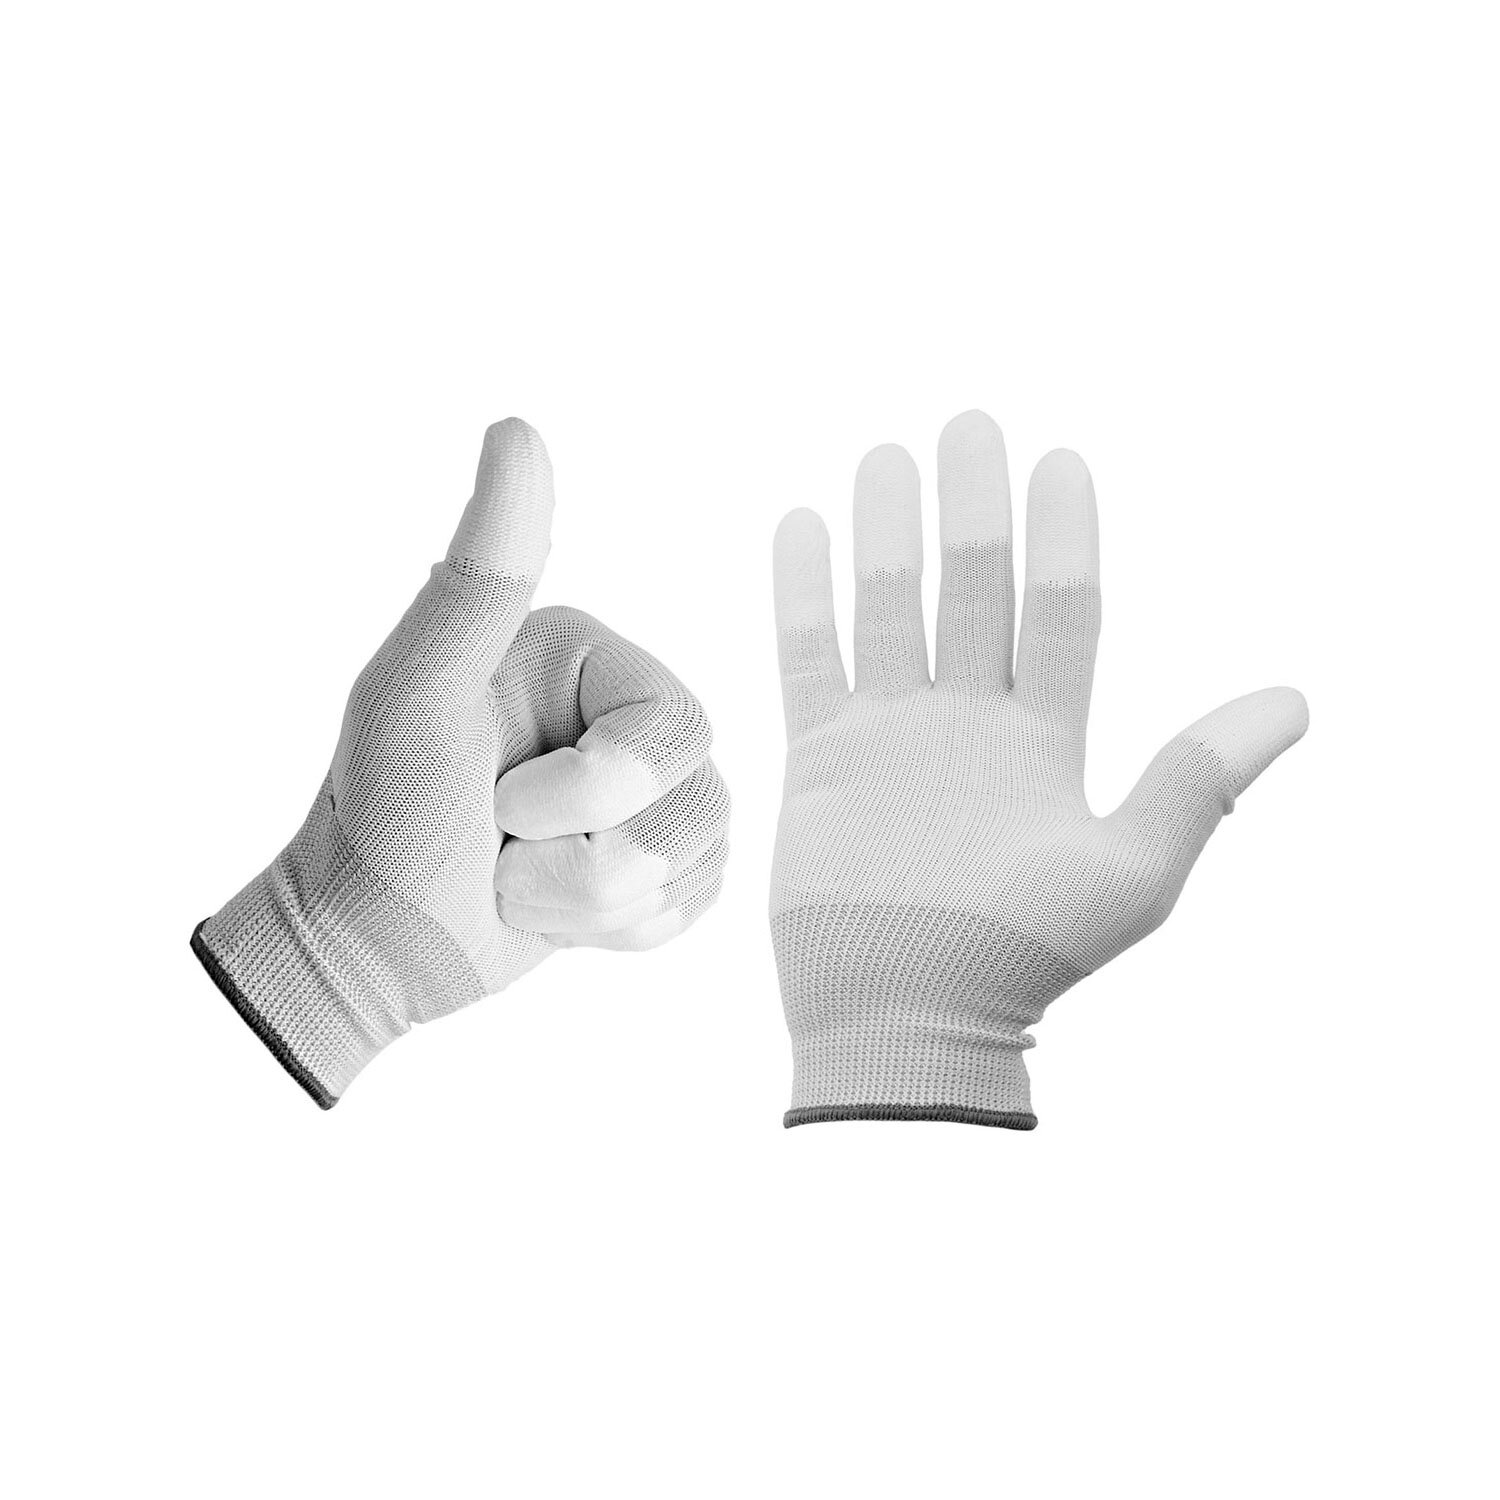 Minadax ESD Antistatik Carbon Handschuh f&uuml;r elektronische Arbeiten in Gr&ouml;&szlig;e L - ideal geeignet f&uuml;r Reinigung und Reparatur